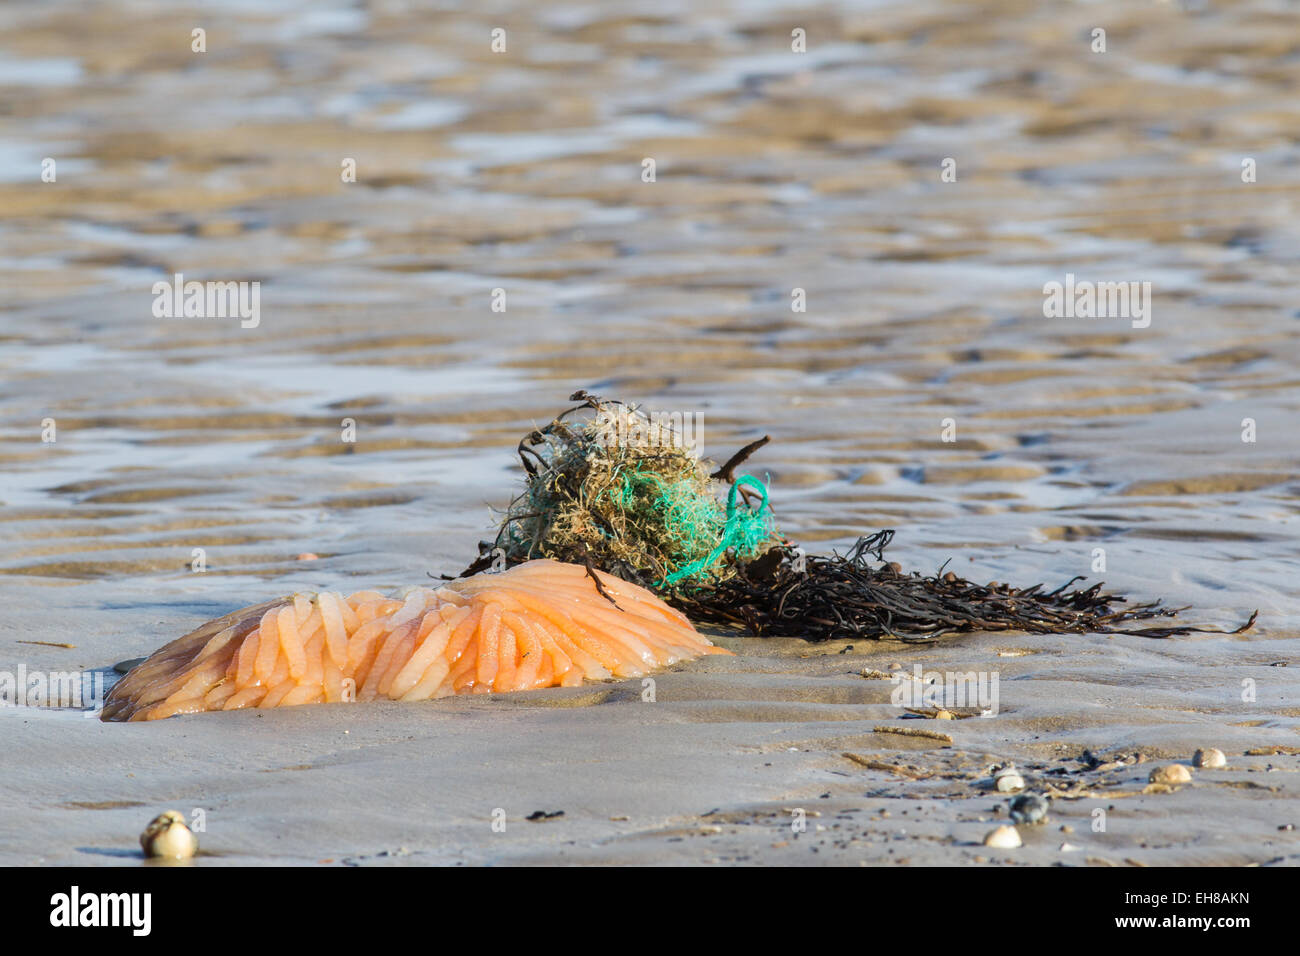 Eiern aus dem europäischen oder gemeinsame Kalmar (Loligo Vulgaris) angespült Dungeness Strand, Kent UK, nach einem Sturm. Stockfoto